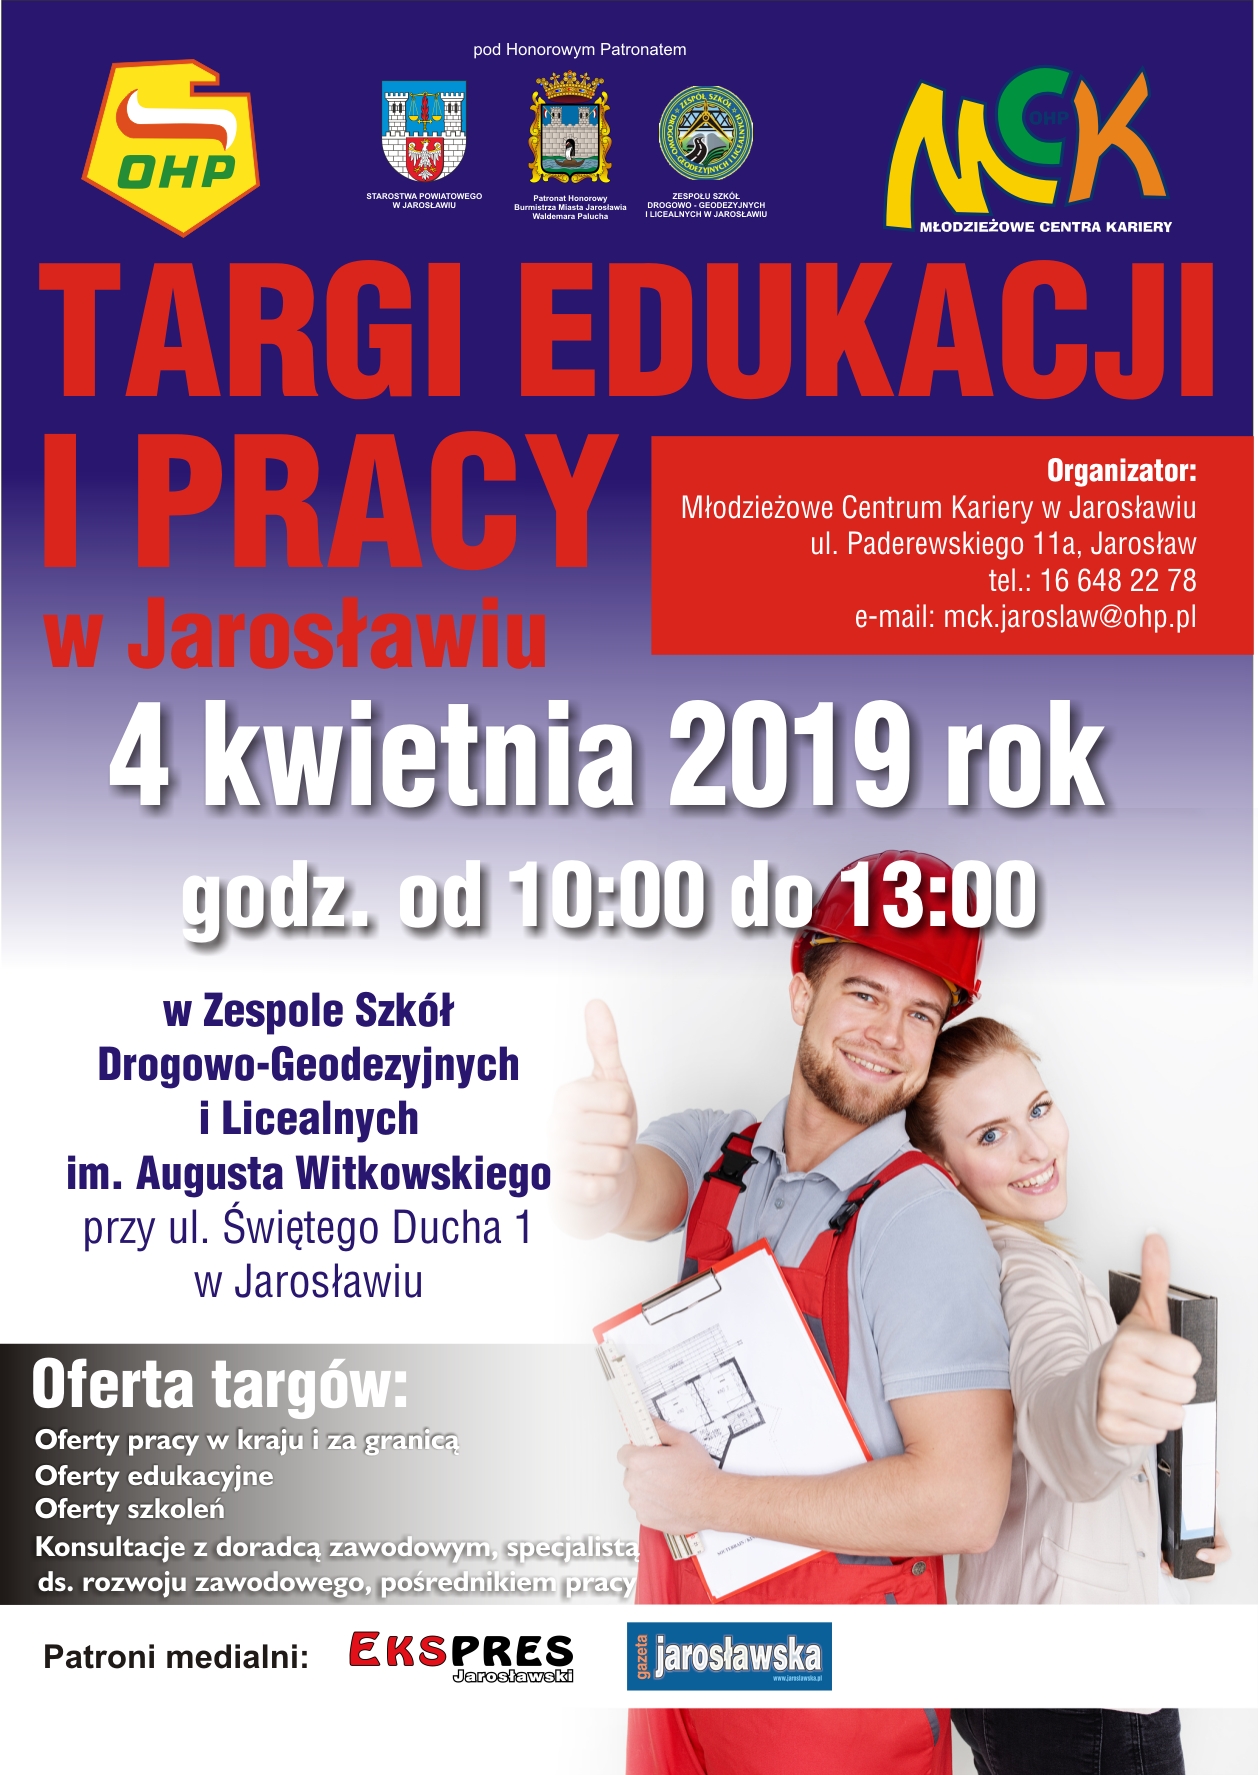 Targi Edukacji i Pracy w Jarosławiu